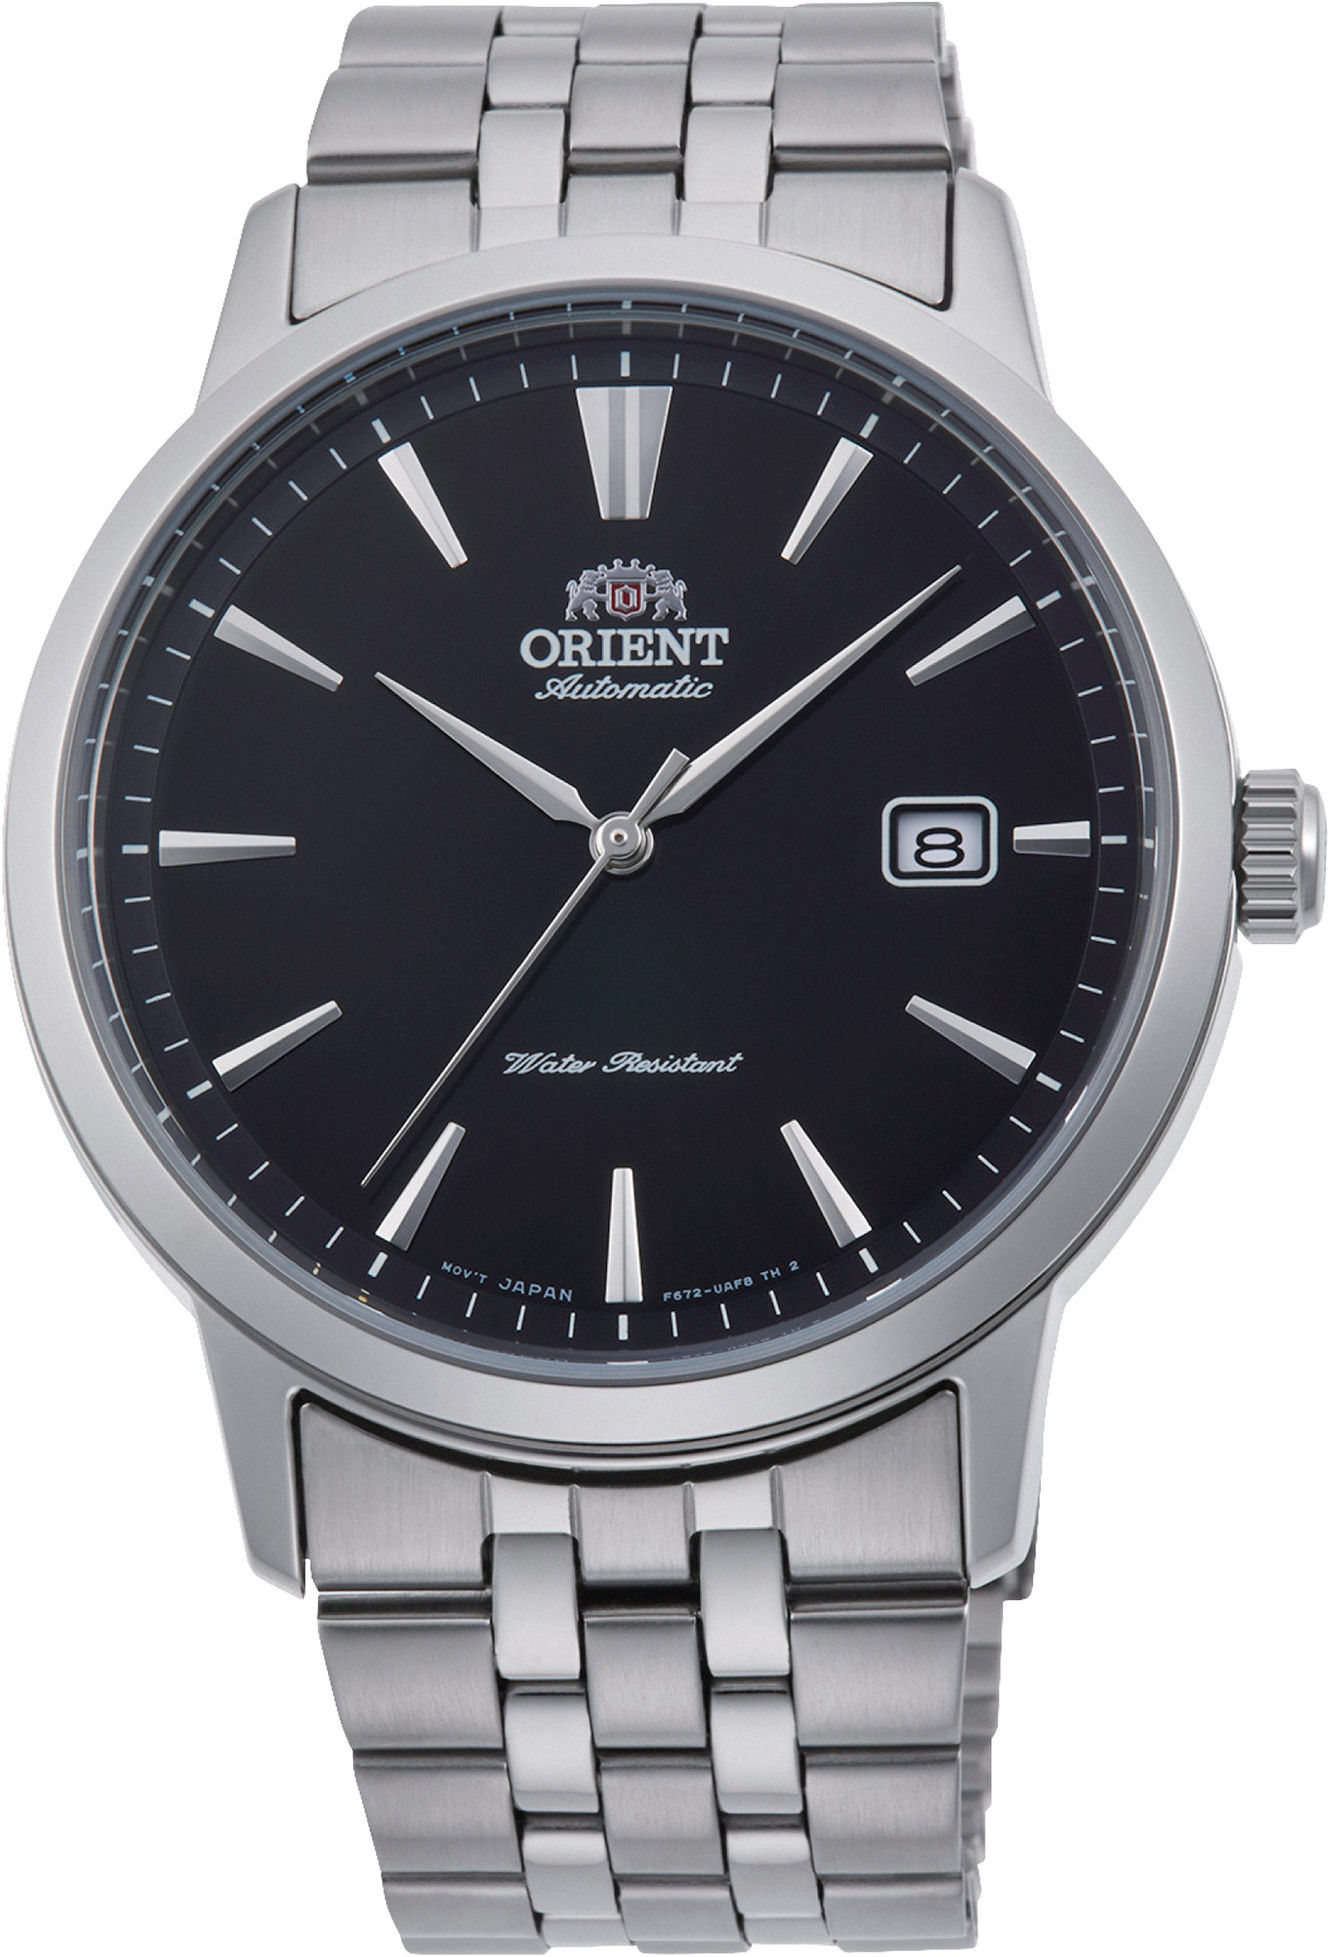 Купить часы ориент механику. Наручные часы Orient ab0032b1. Orient fem7j007d9. Наручные часы Orient ab0f09l. Orient ra-aa0c02l19b.